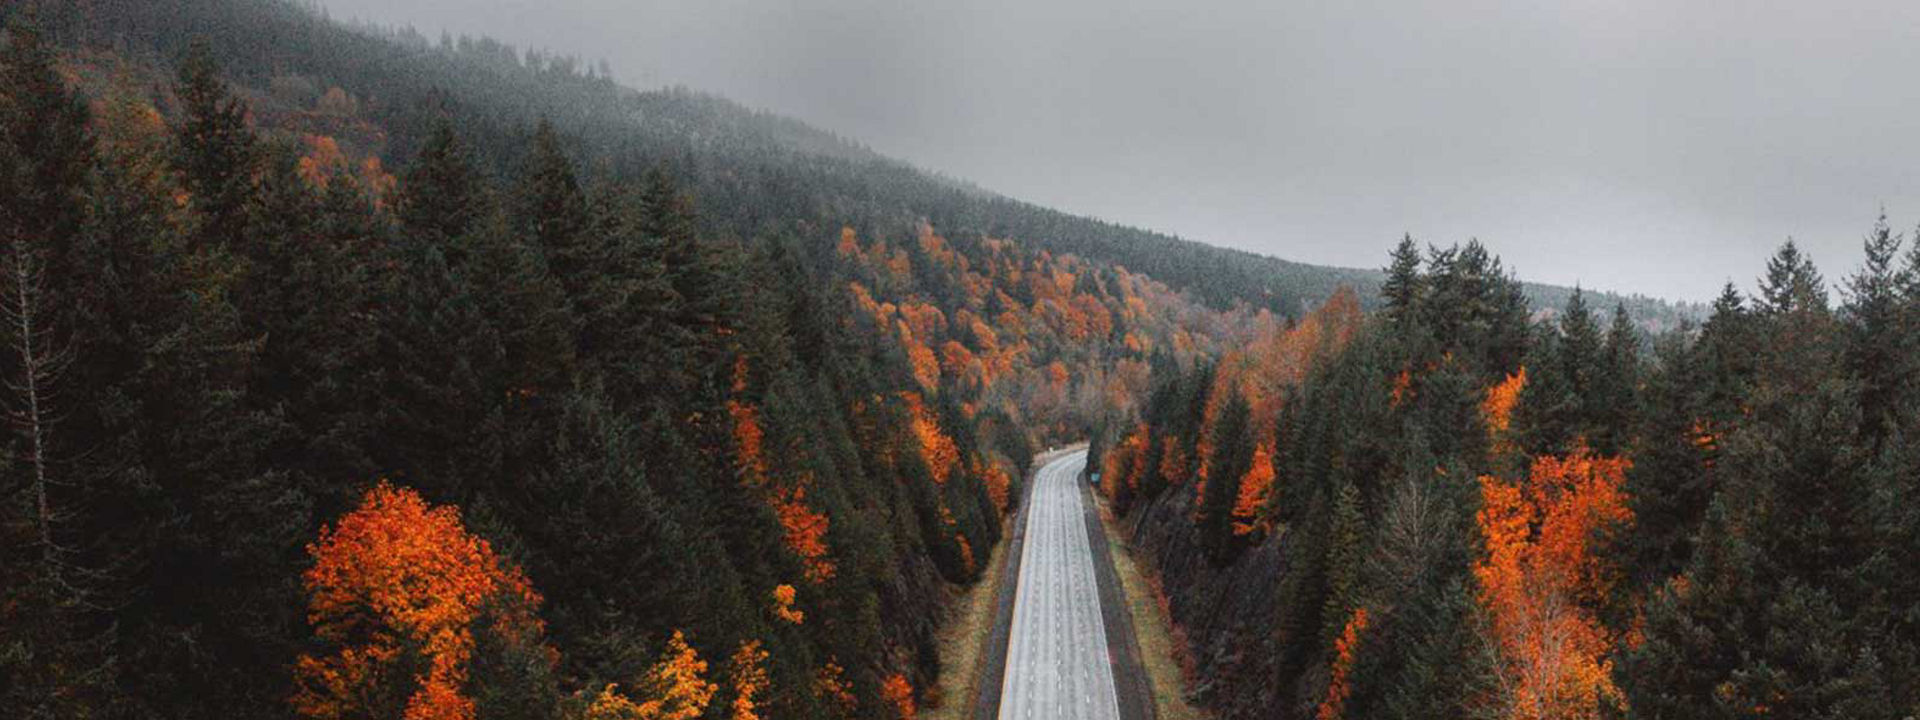 Ceci est l’image d’une autoroute déserte traversant une forêt en automne pour montrer que Weather Control convient en toute saison